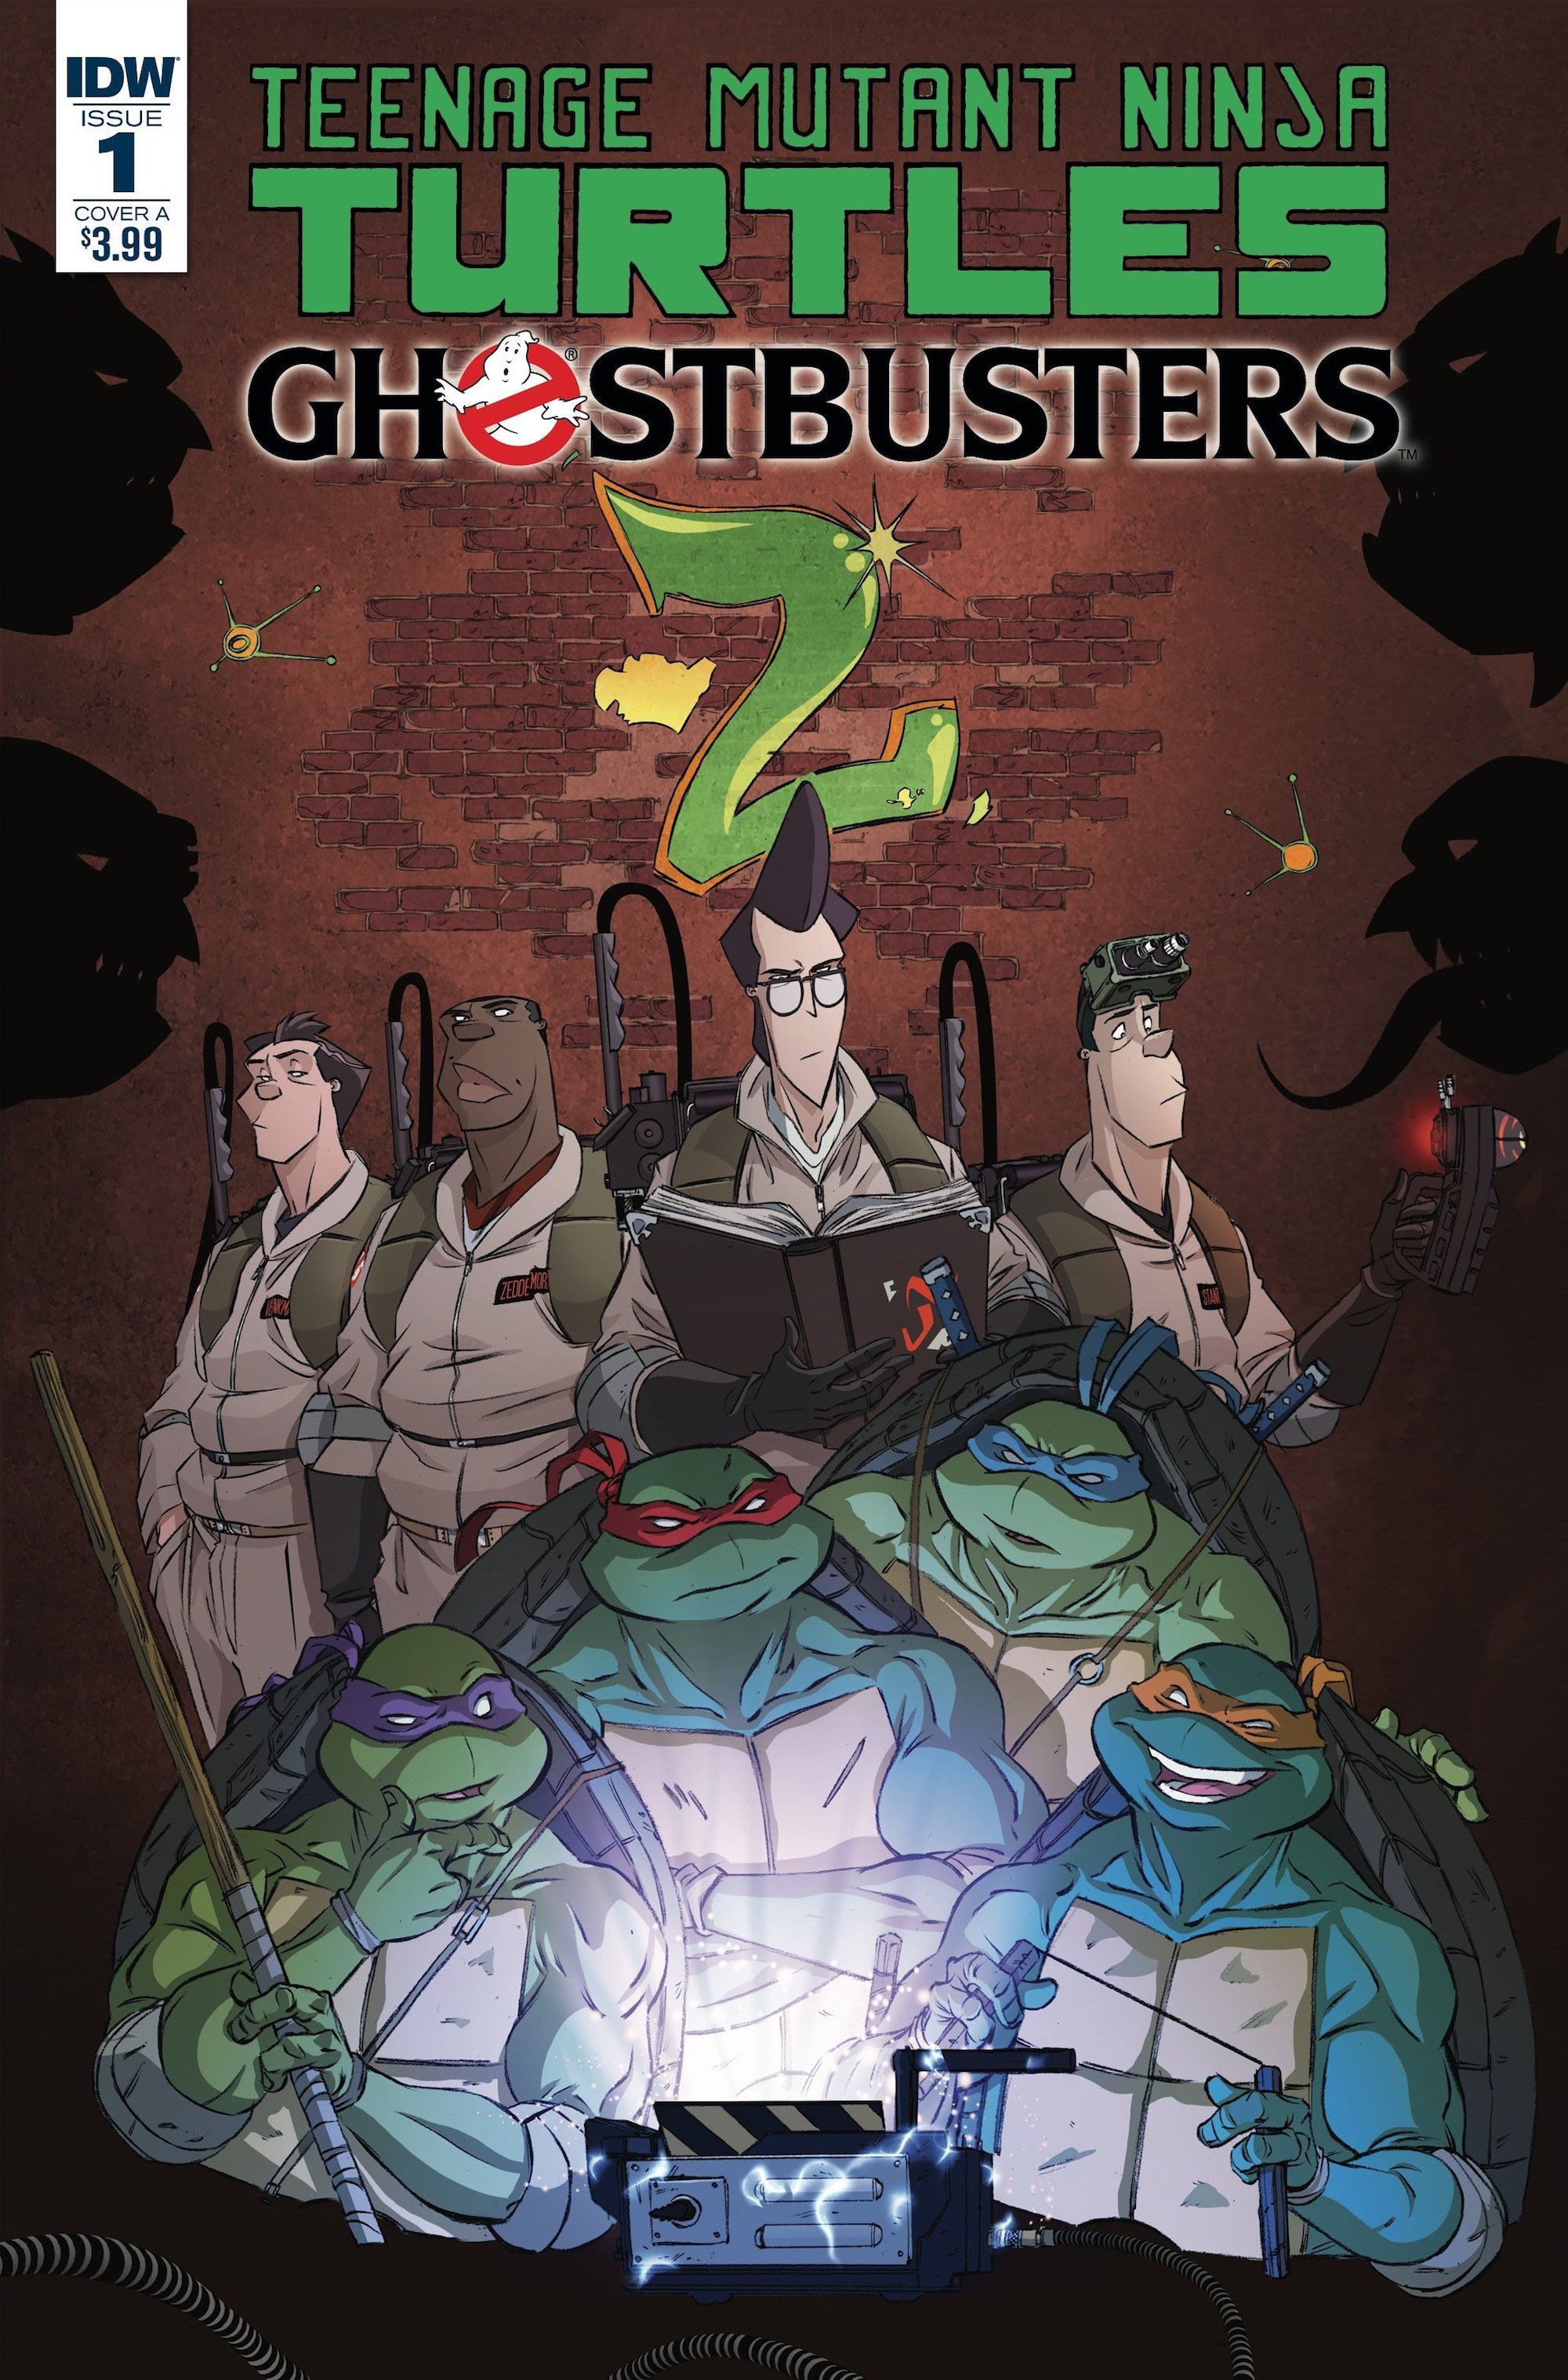 Teenage Mutant Ninja Turtles Ghostbusters IDW Cover